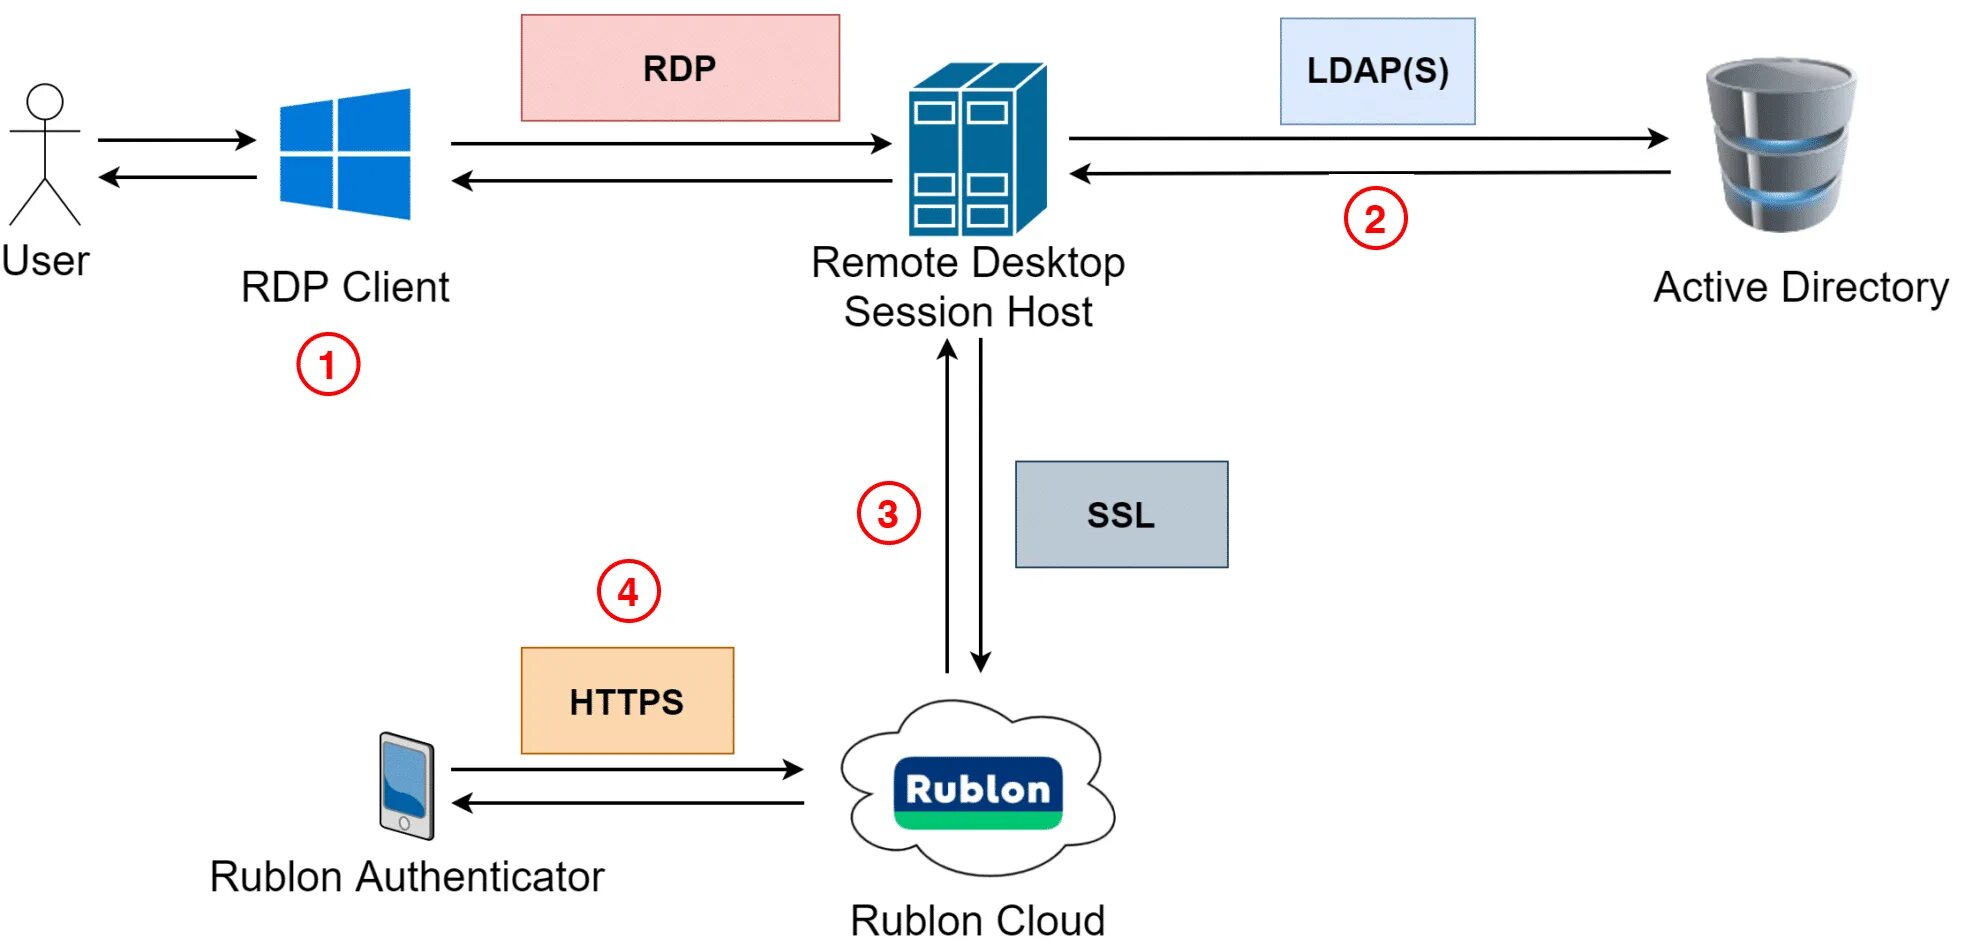 Ldap active. RDP протокол. Remote desktop Protocol. Как работает LDAP. Remote desktop двухфакторная аутентификация.